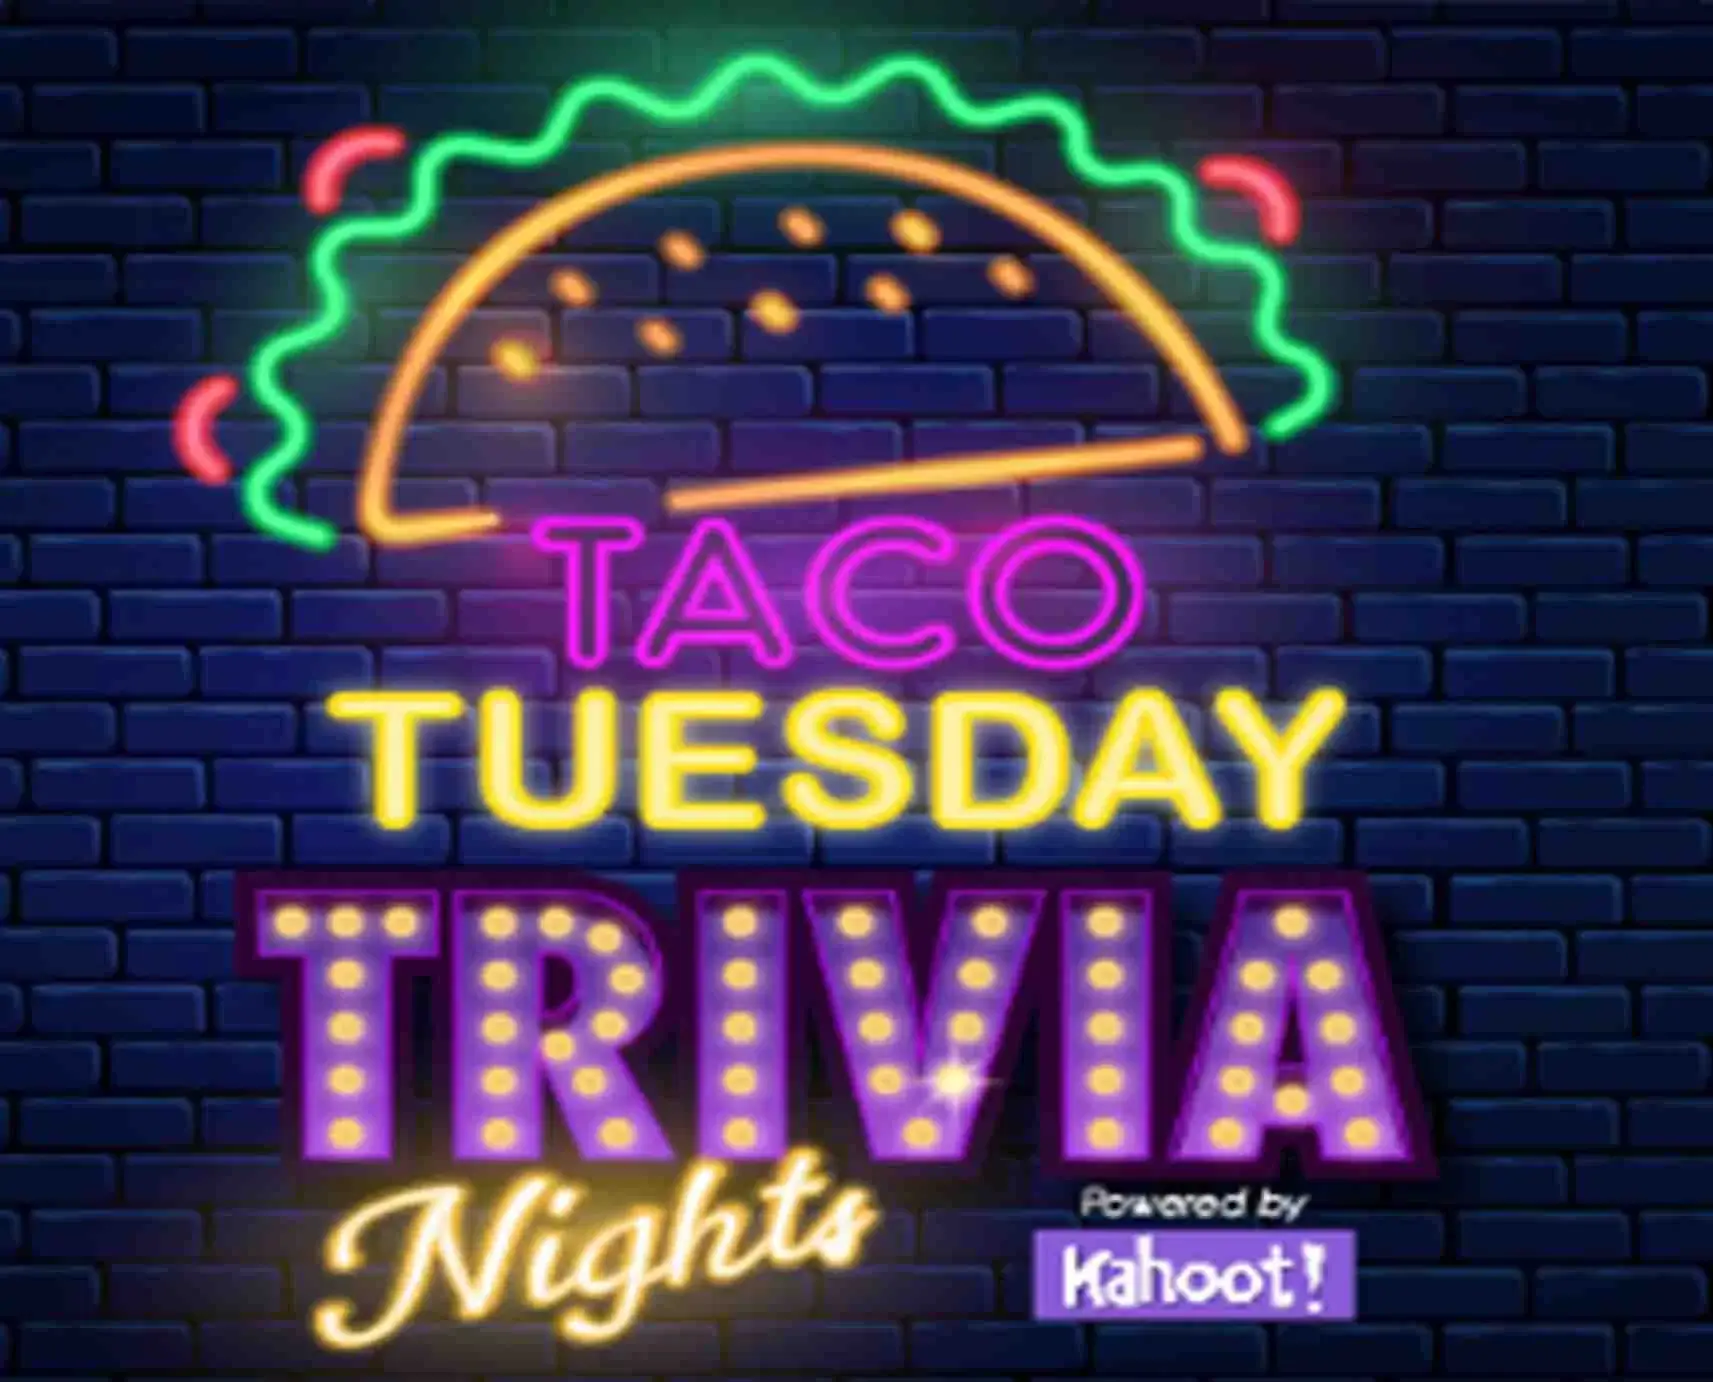 Tacos & Trivia Tuesdays